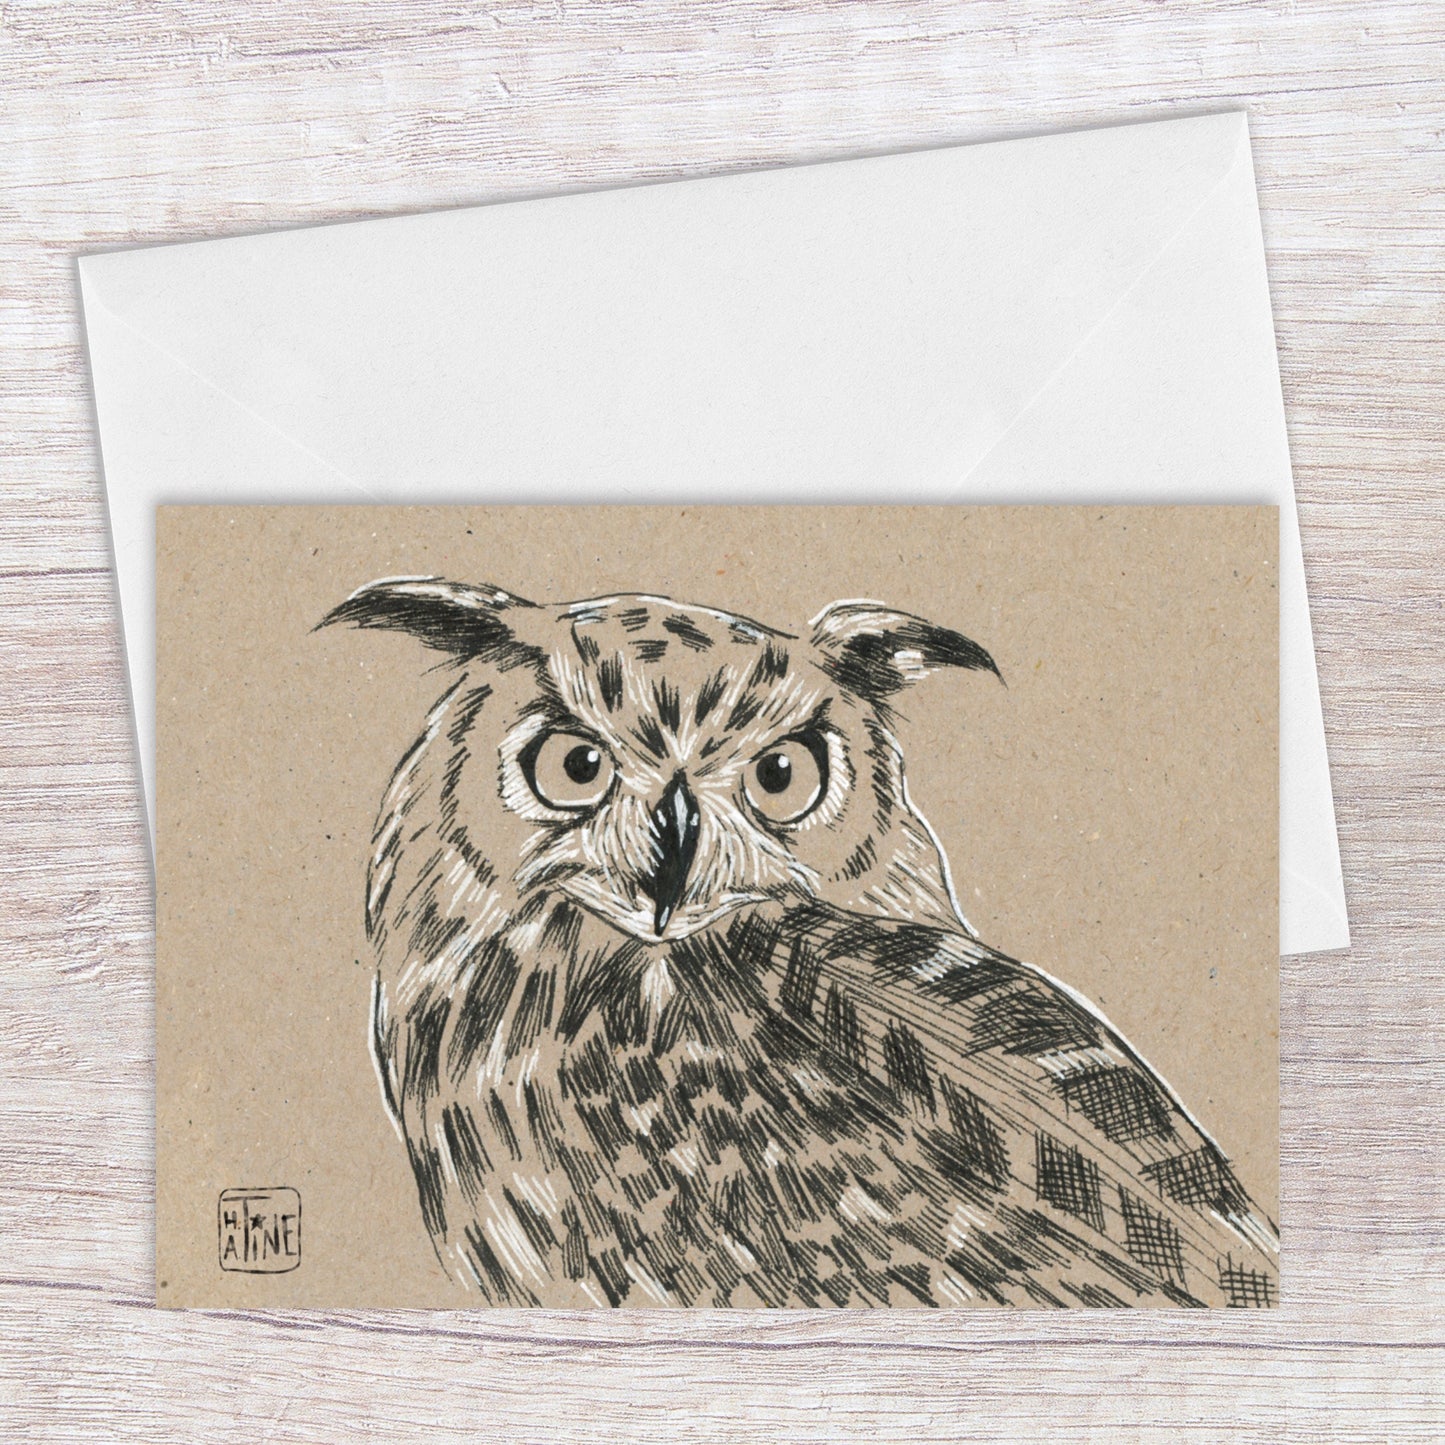 Stor hornugle // Eurasian eagle-owl